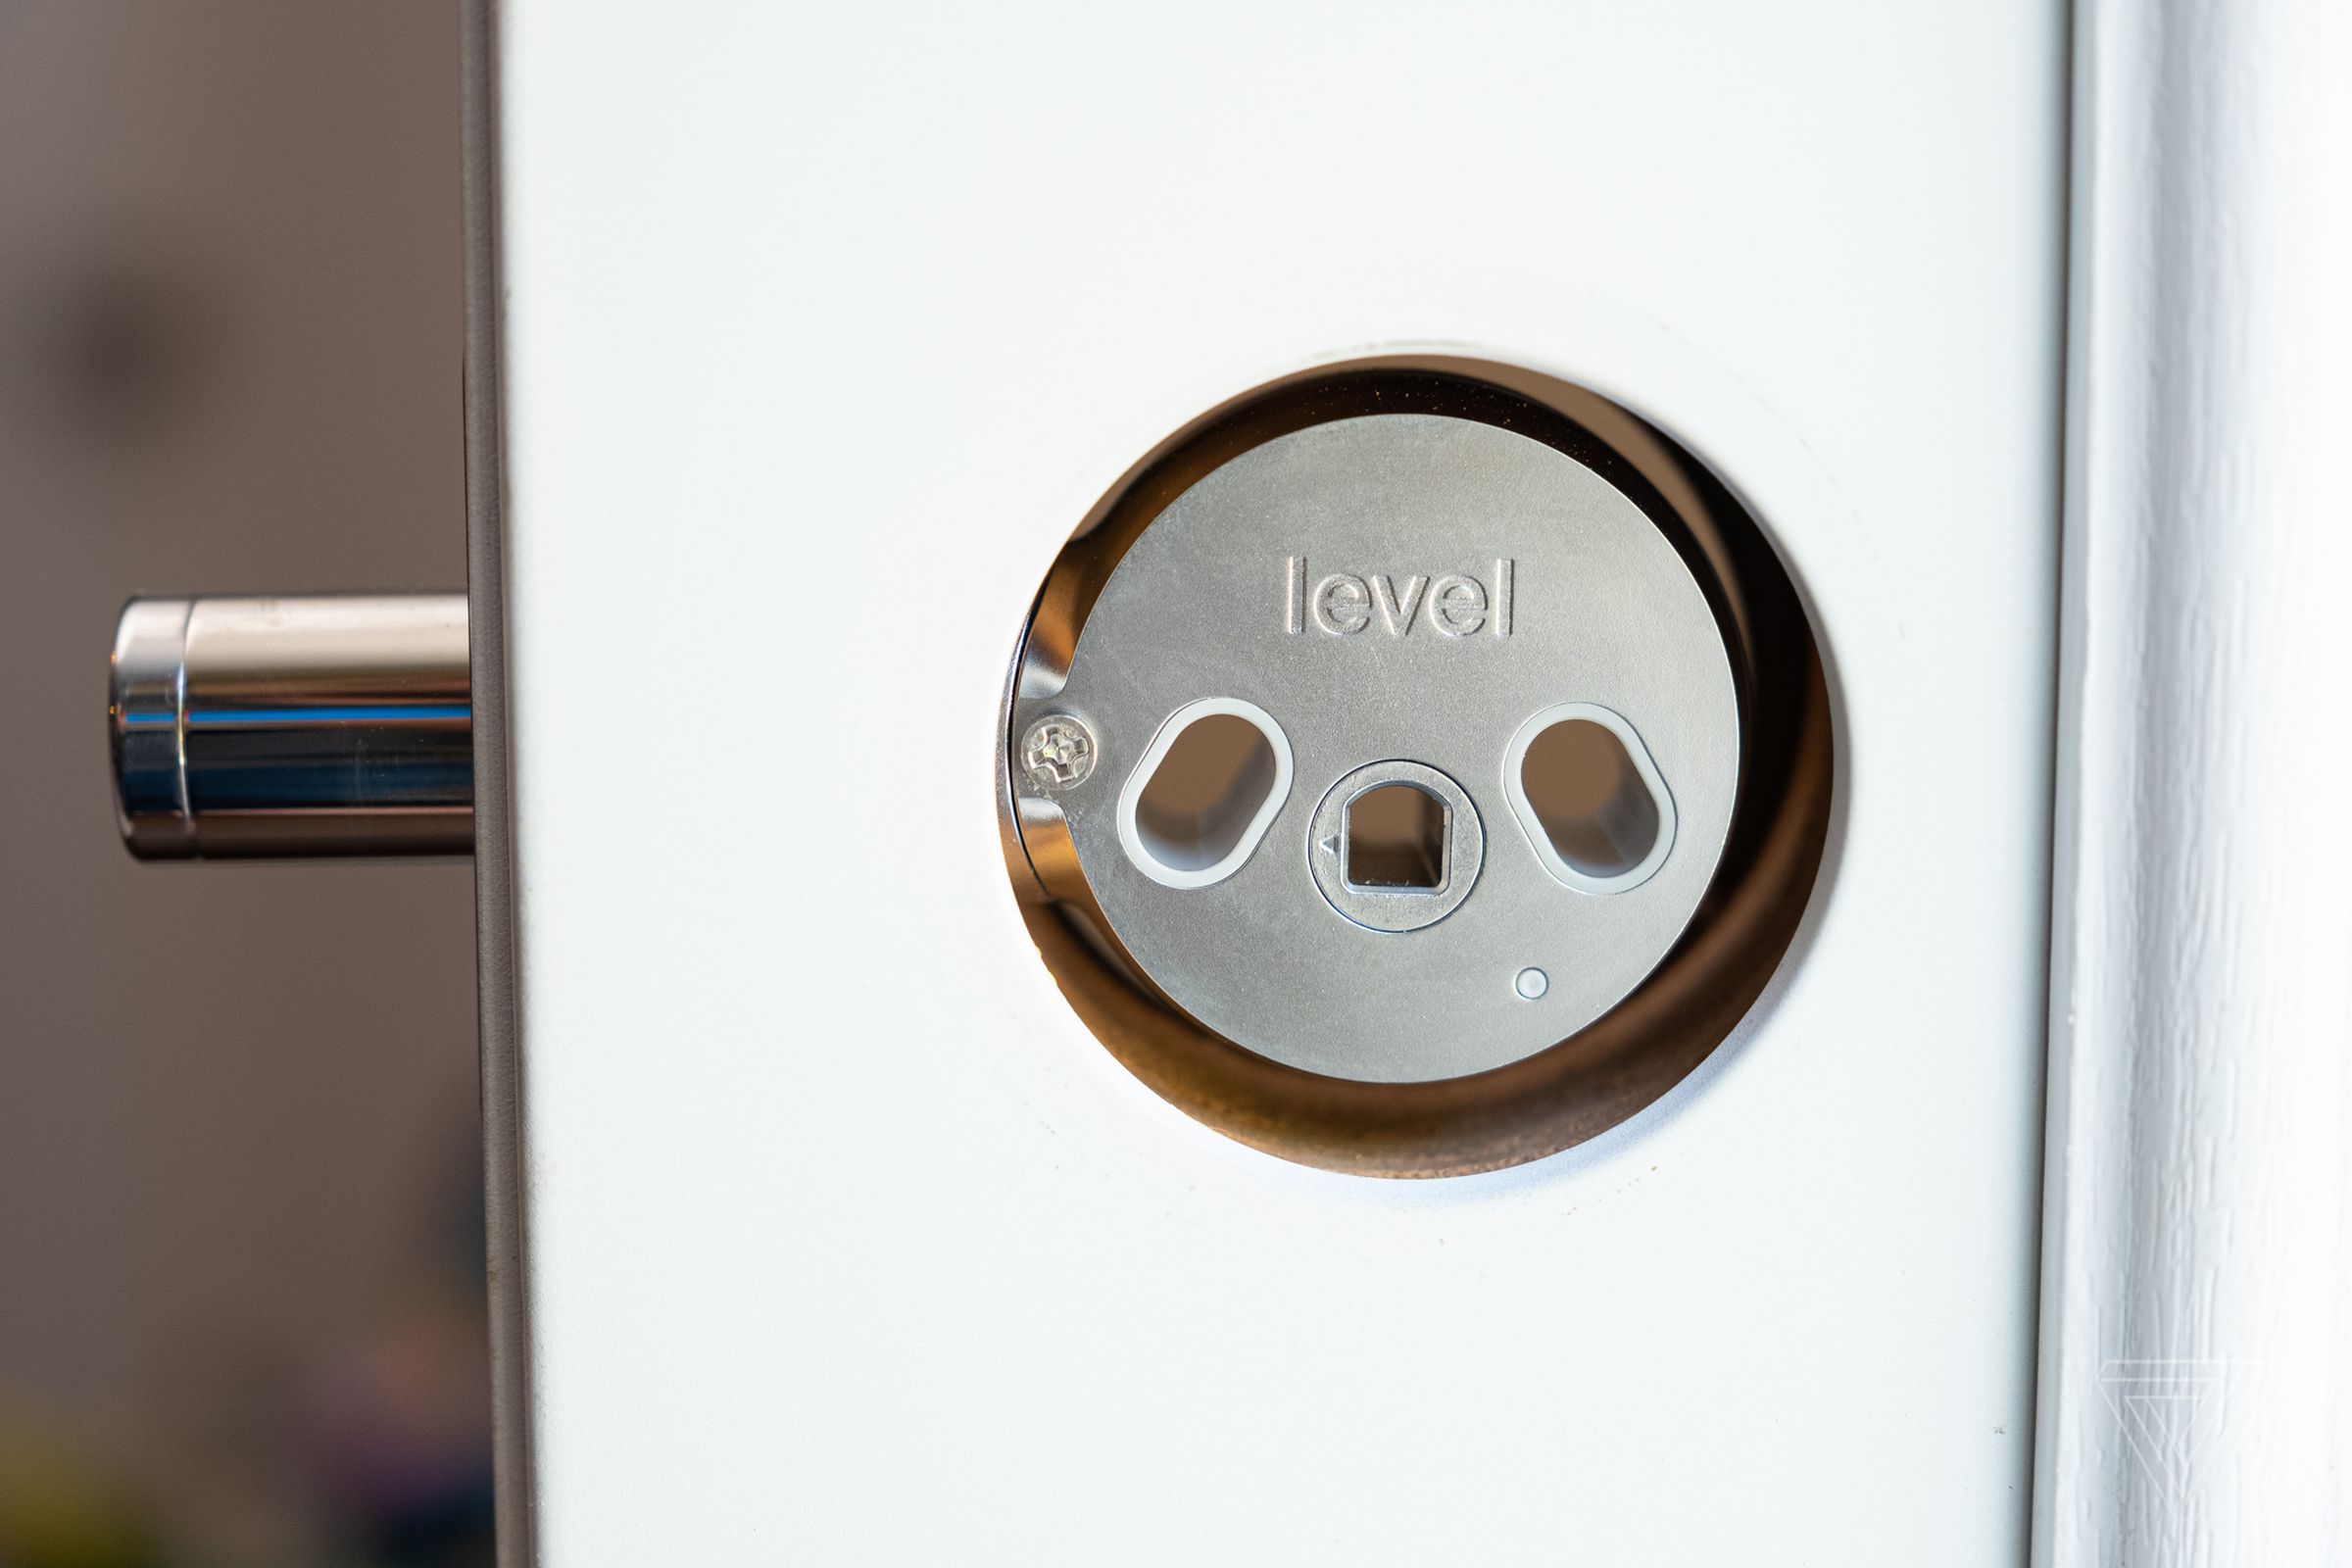 The Level Lock smart lock in a door frame